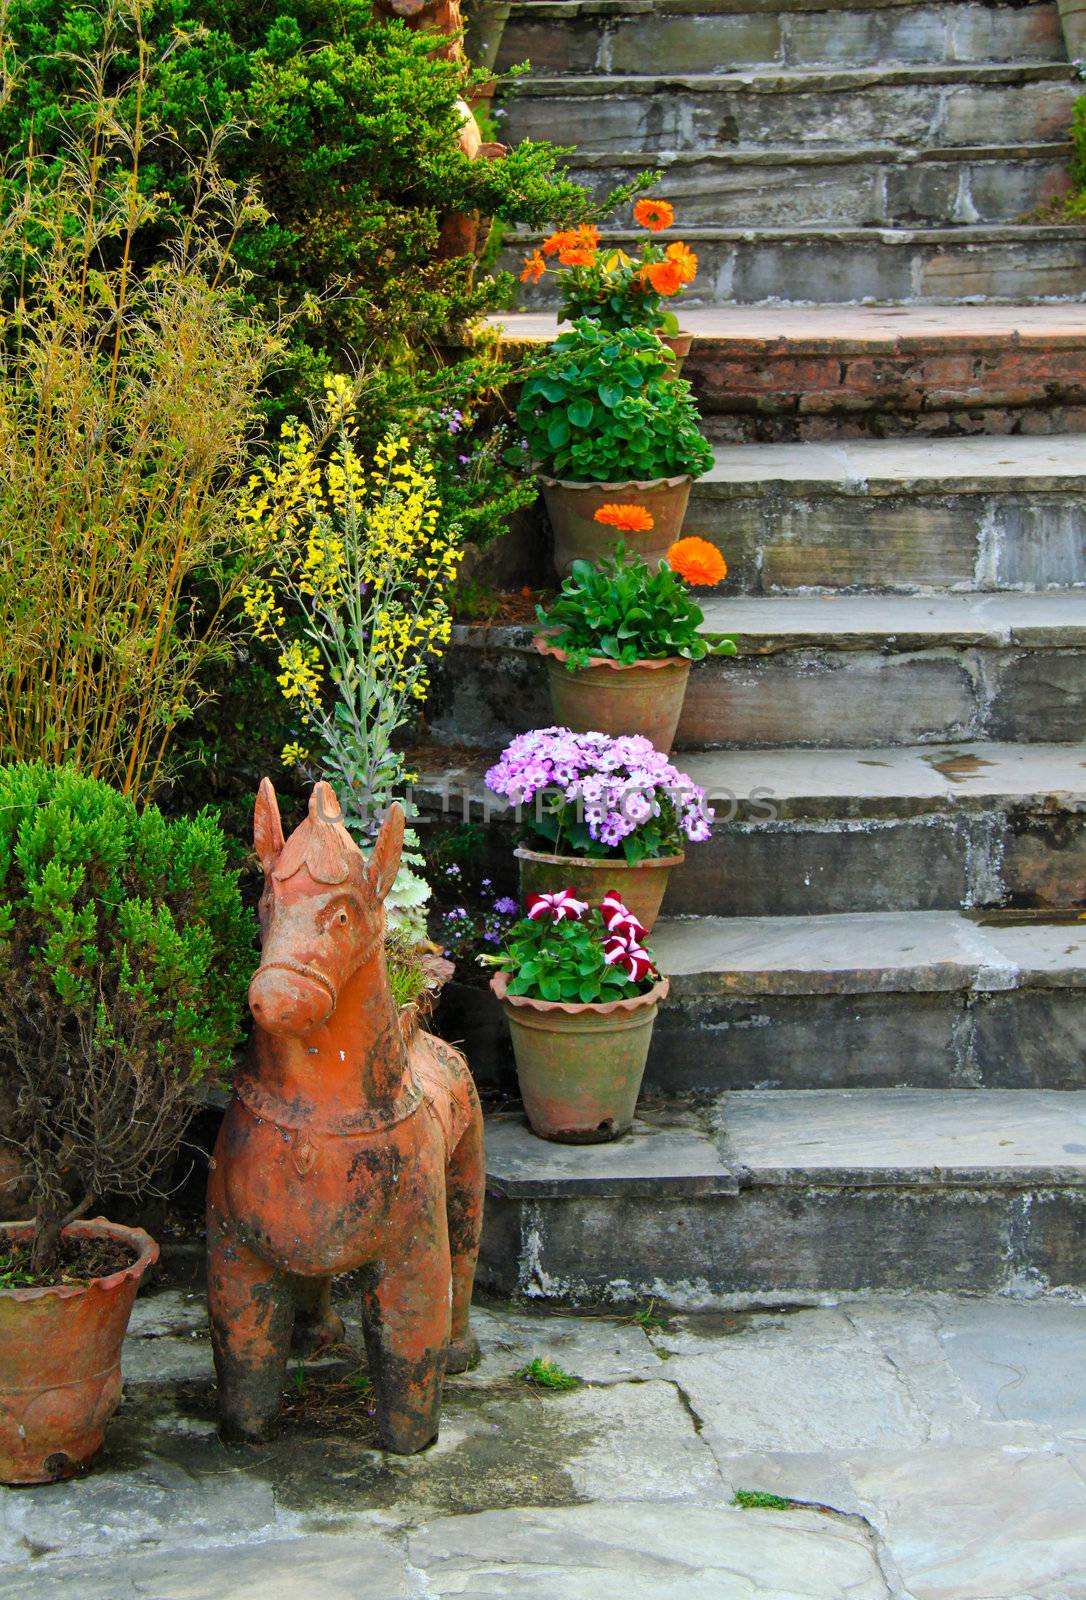 Ornament stair in garden